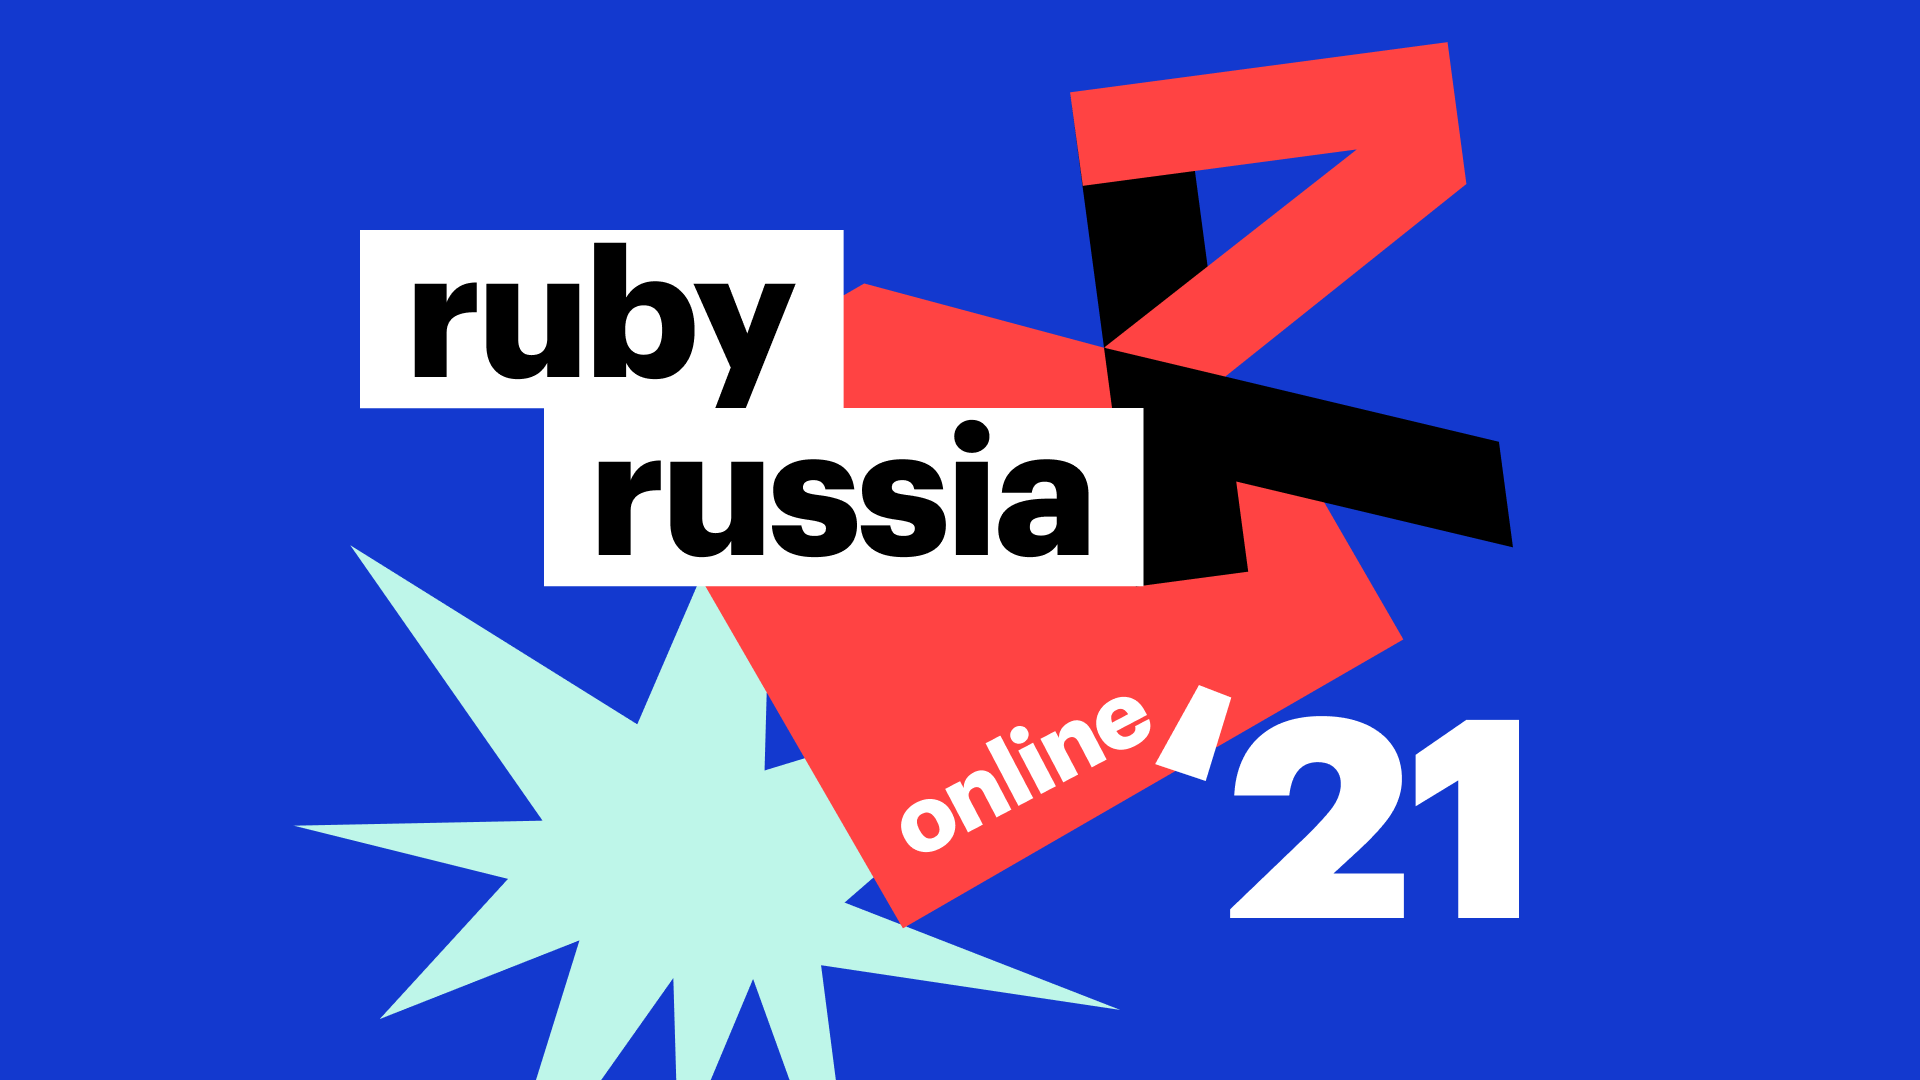 Итоги RubyRussia 2021: онлайн и максимум участников